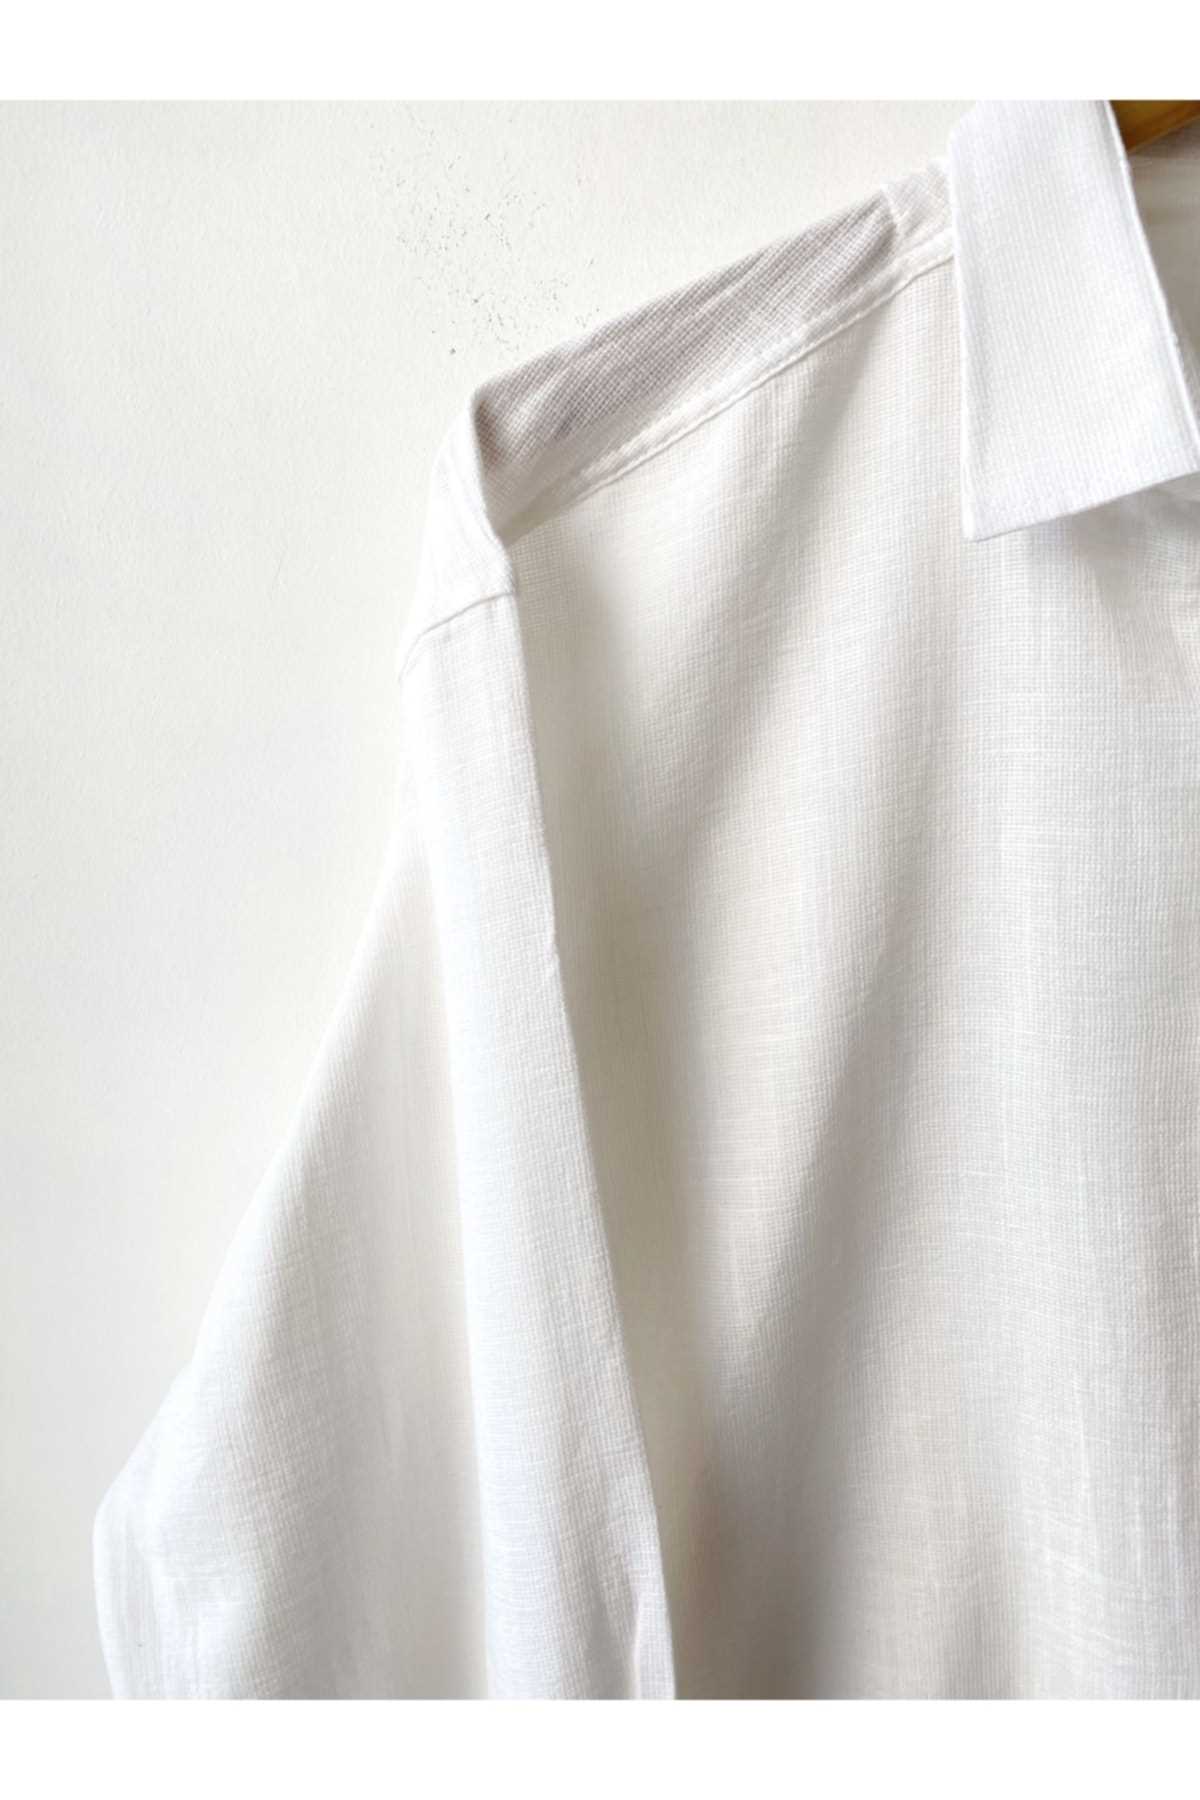 خرید پستی پیراهن آستین کوتاه مردانه شیک برند Hazhers رنگ سفید ty239816020